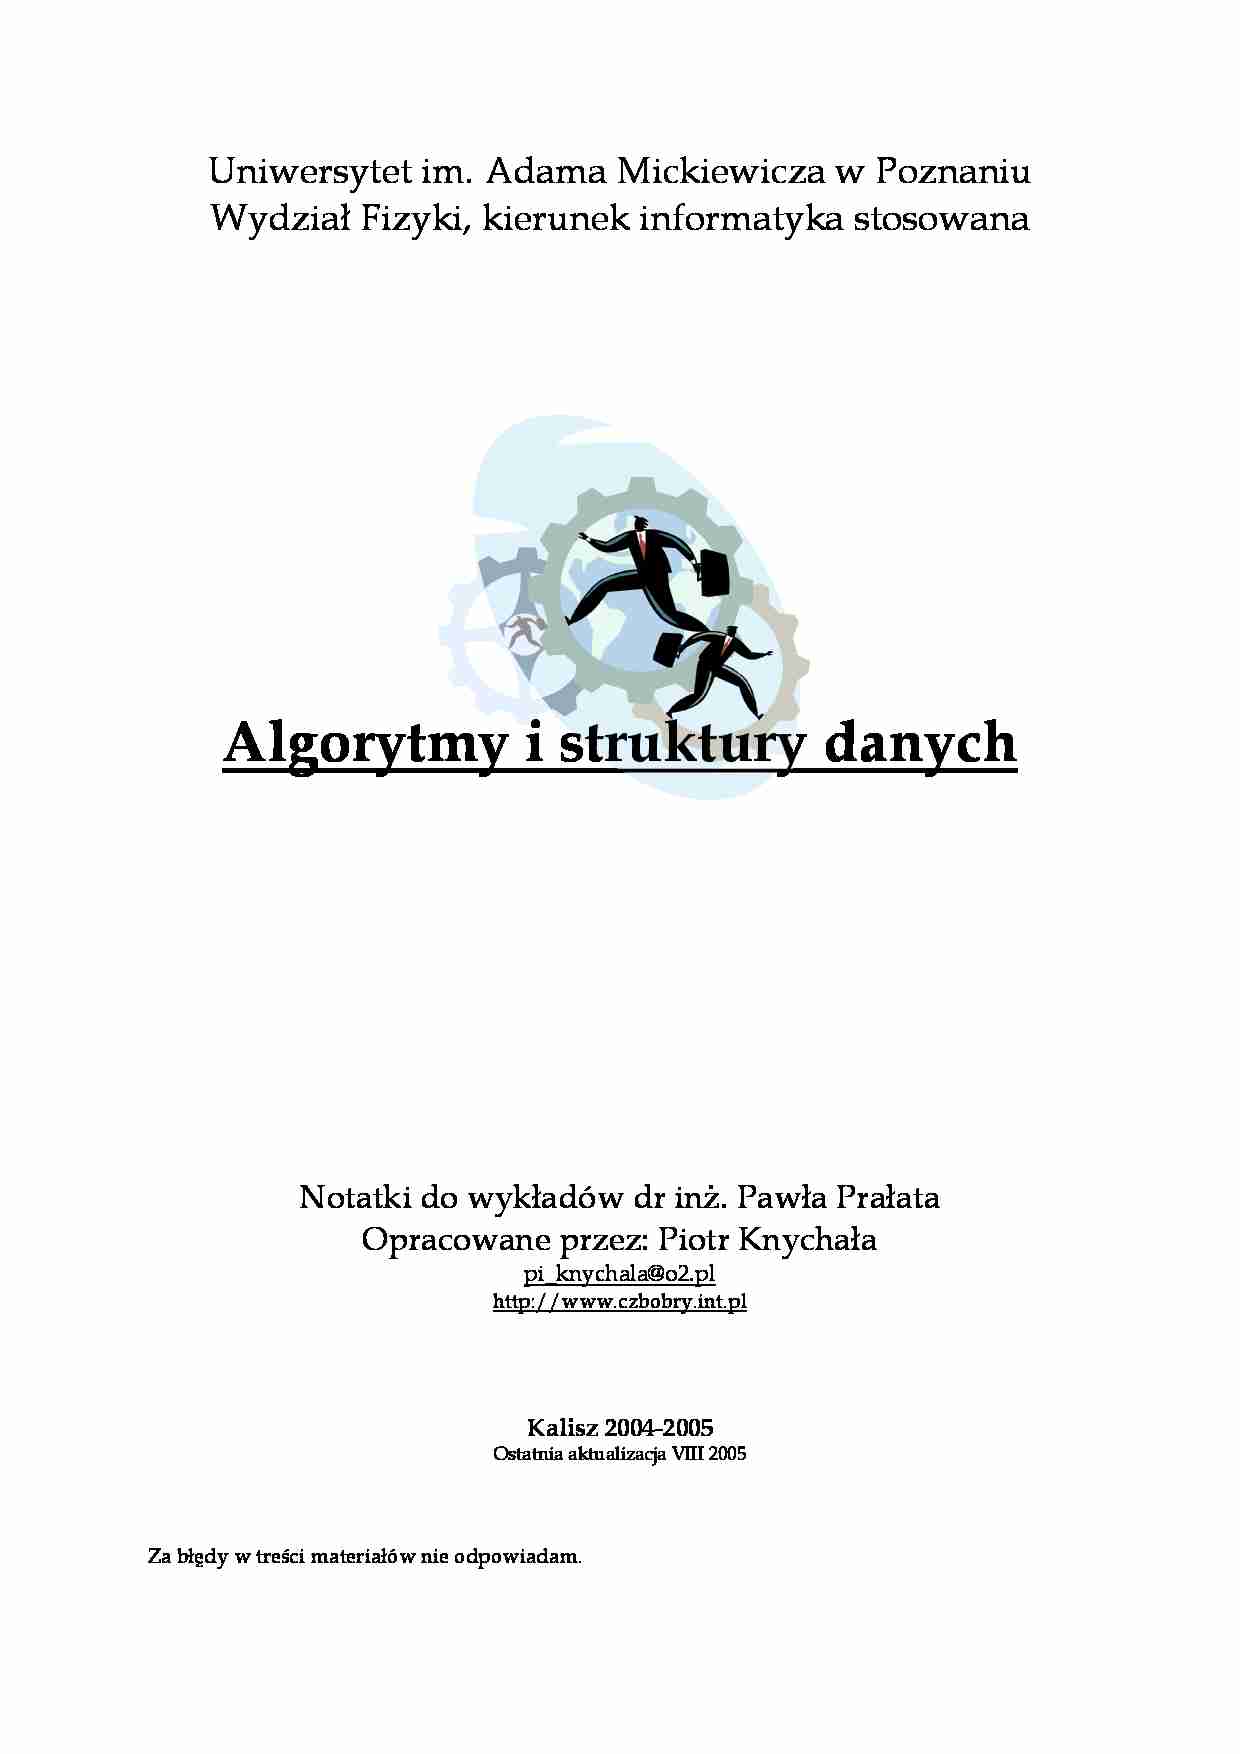 Algorytmy i Struktury Danych - omówienie - strona 1